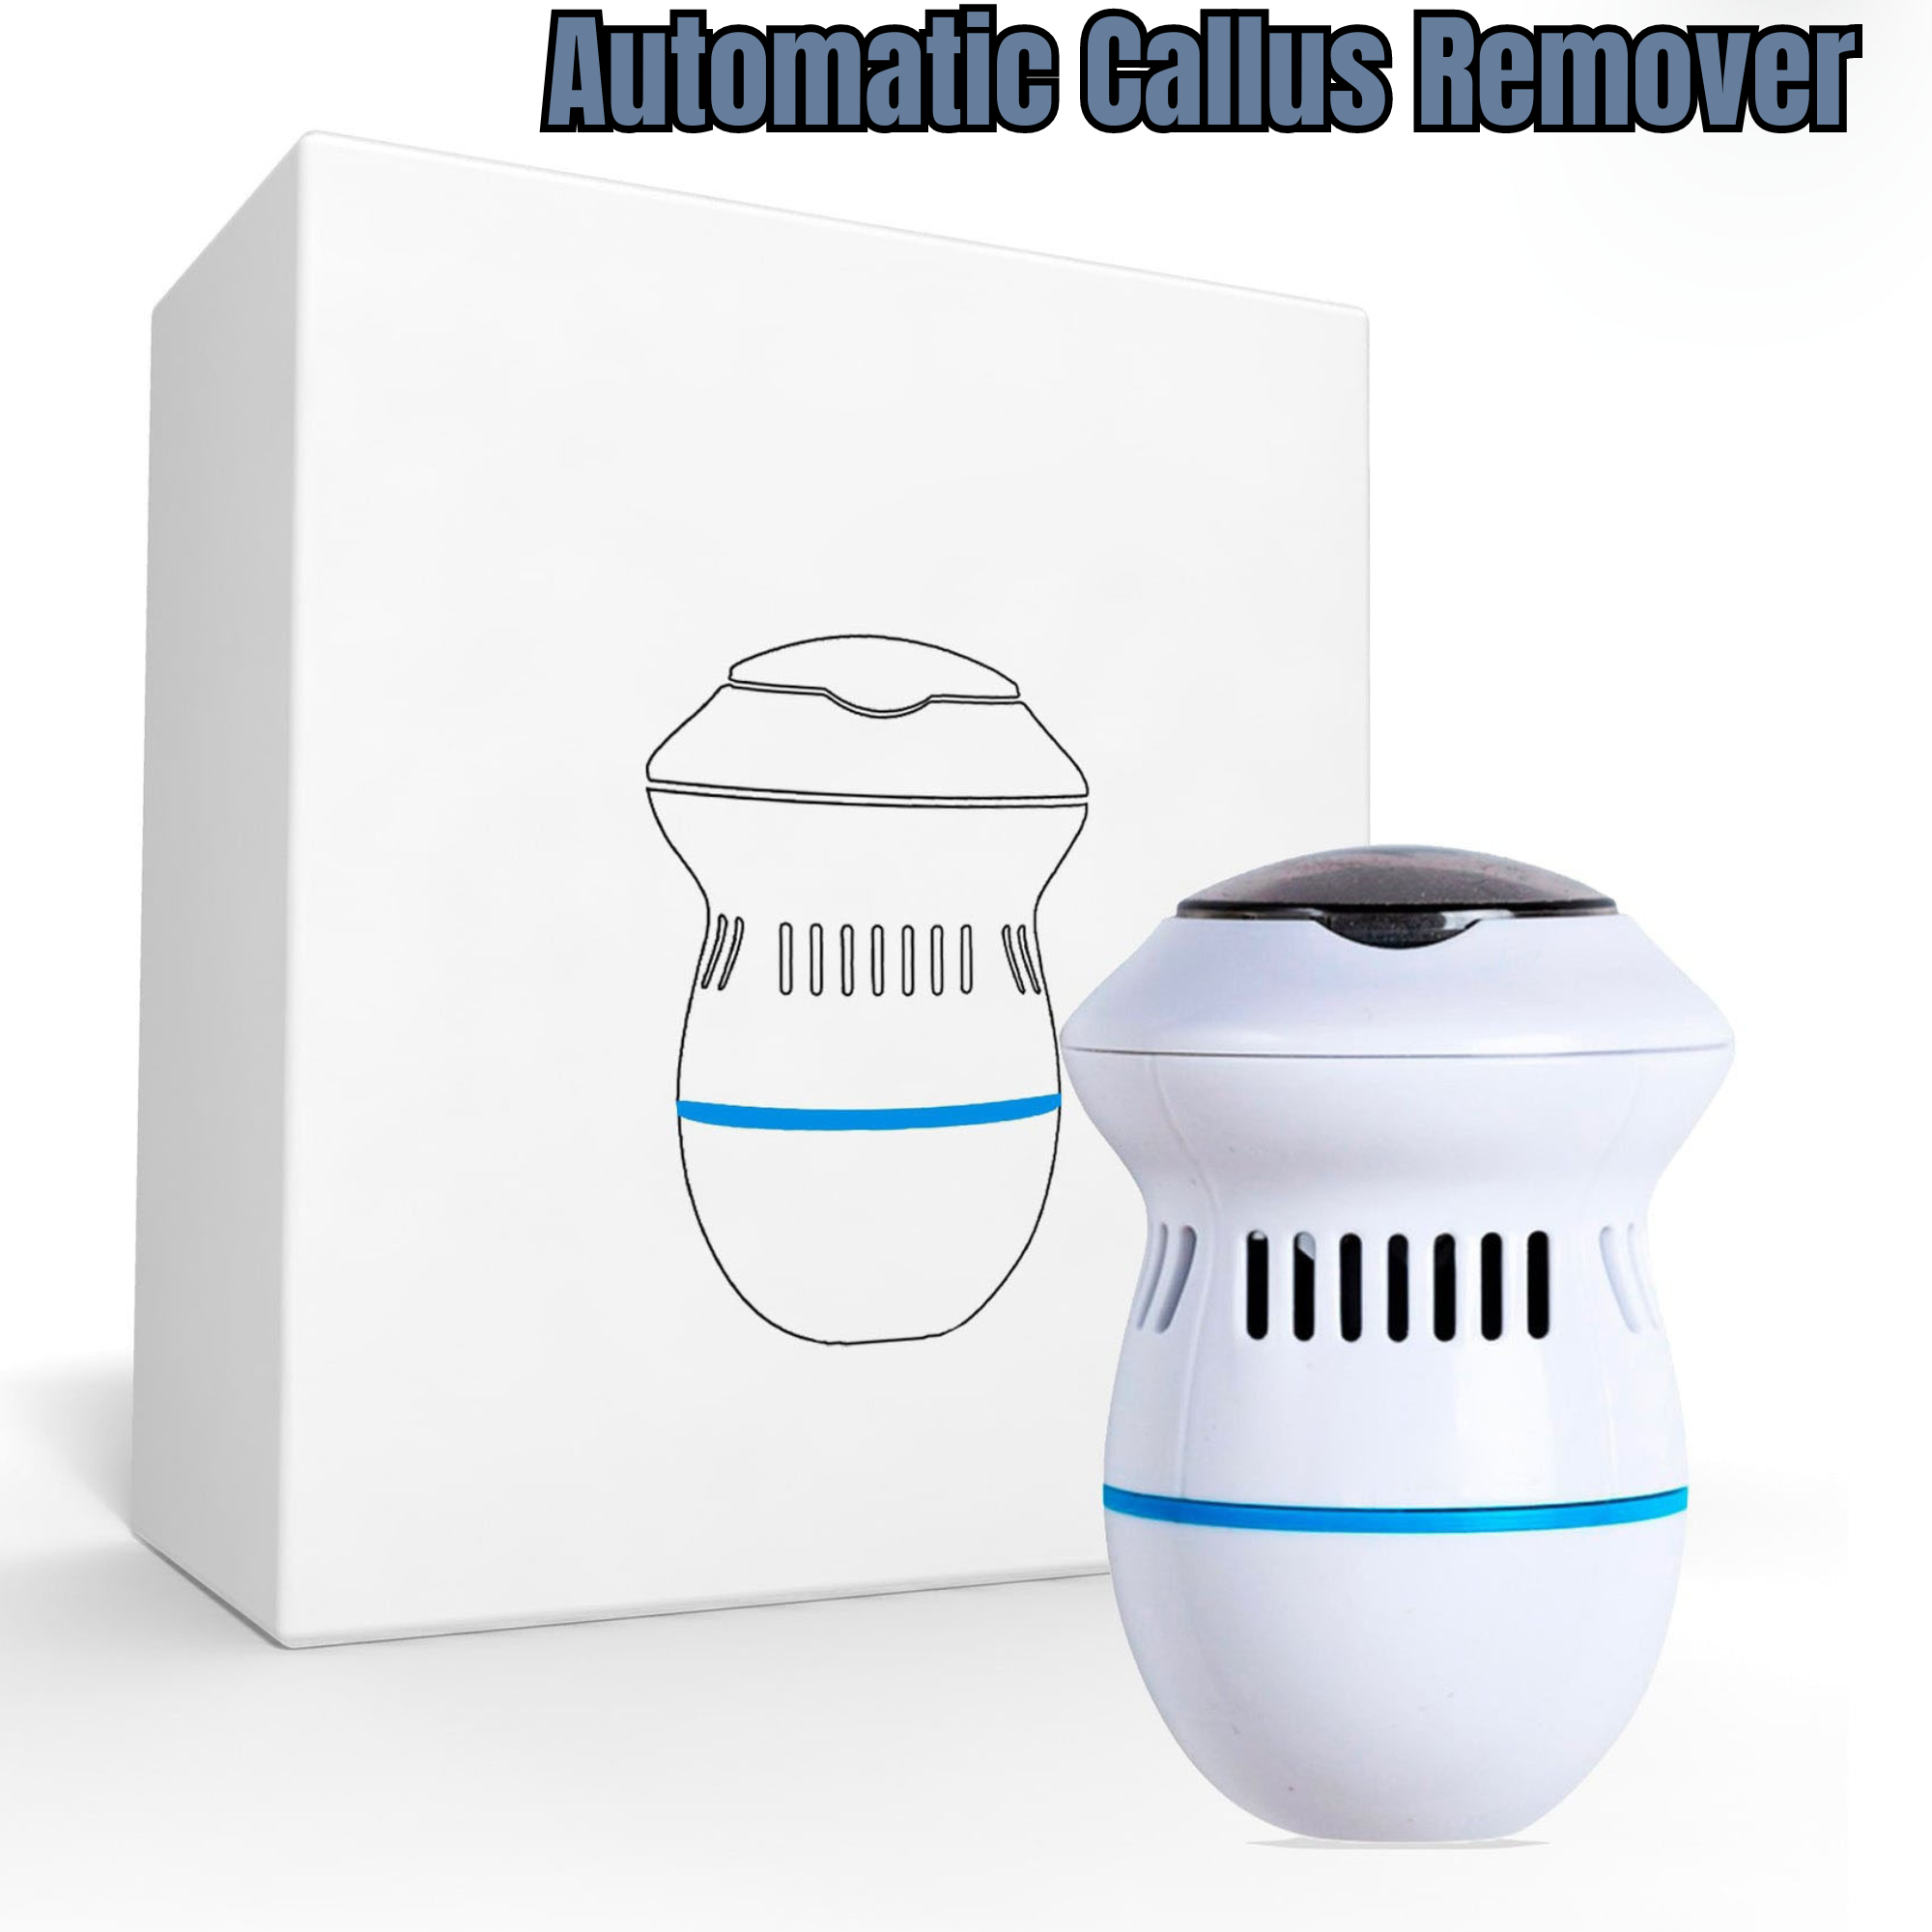 Automatic Callus-Remover